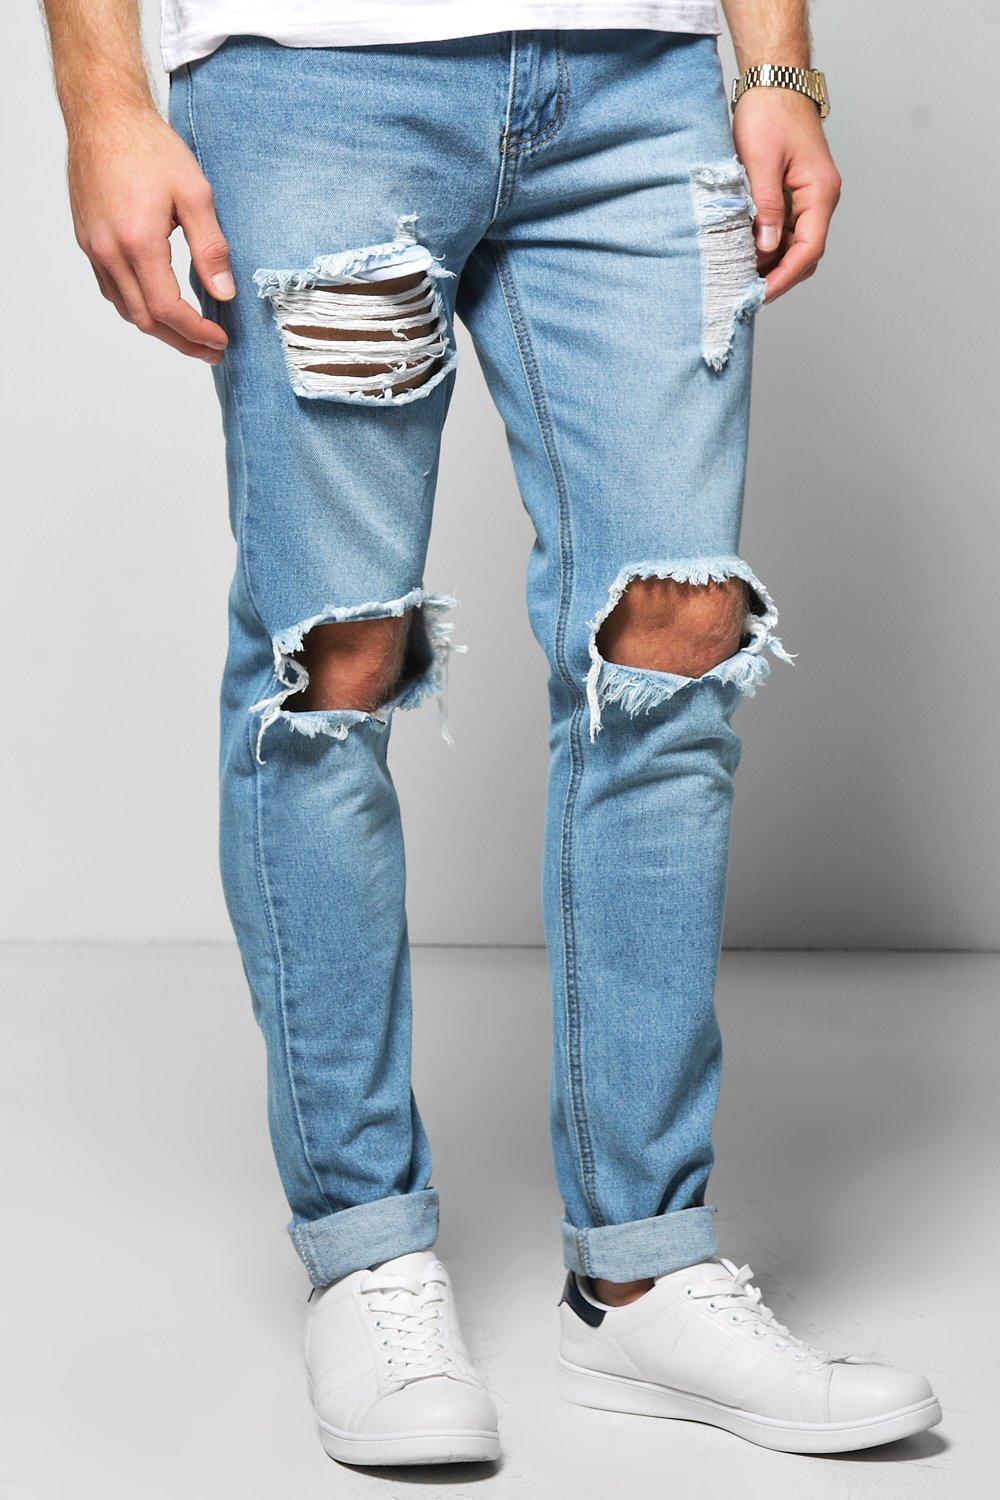 vintage blue jeans mens